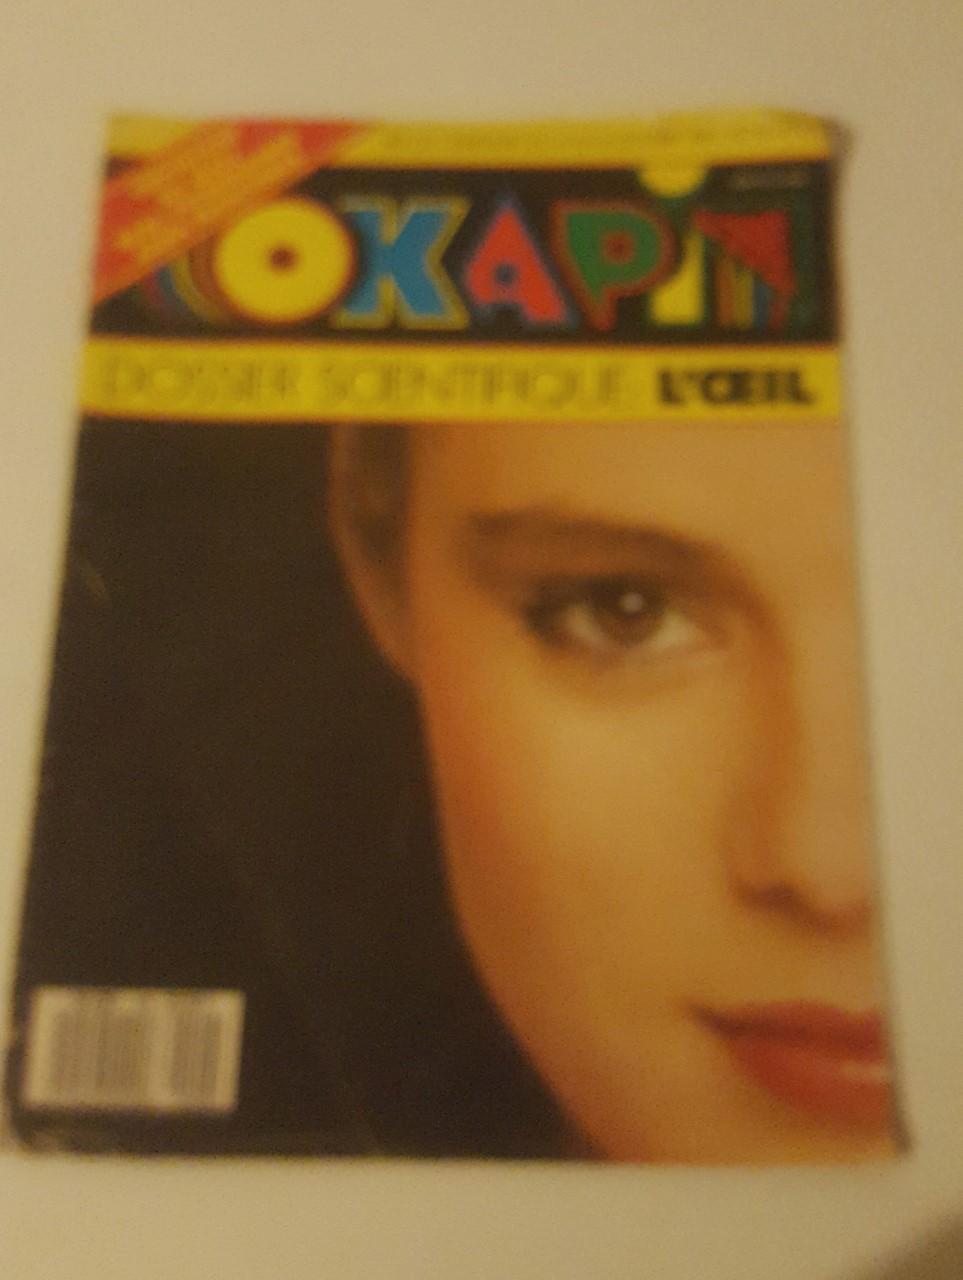 troc de troc j'échange magazine okapi : "dossier scientifique sur l'oeil" image 0